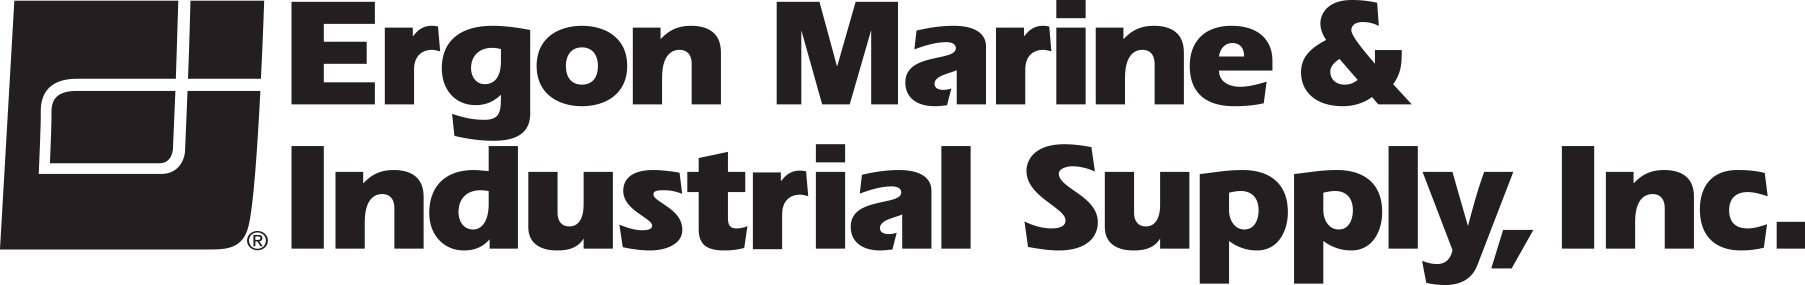 [Image: Ergon Marine Logo]